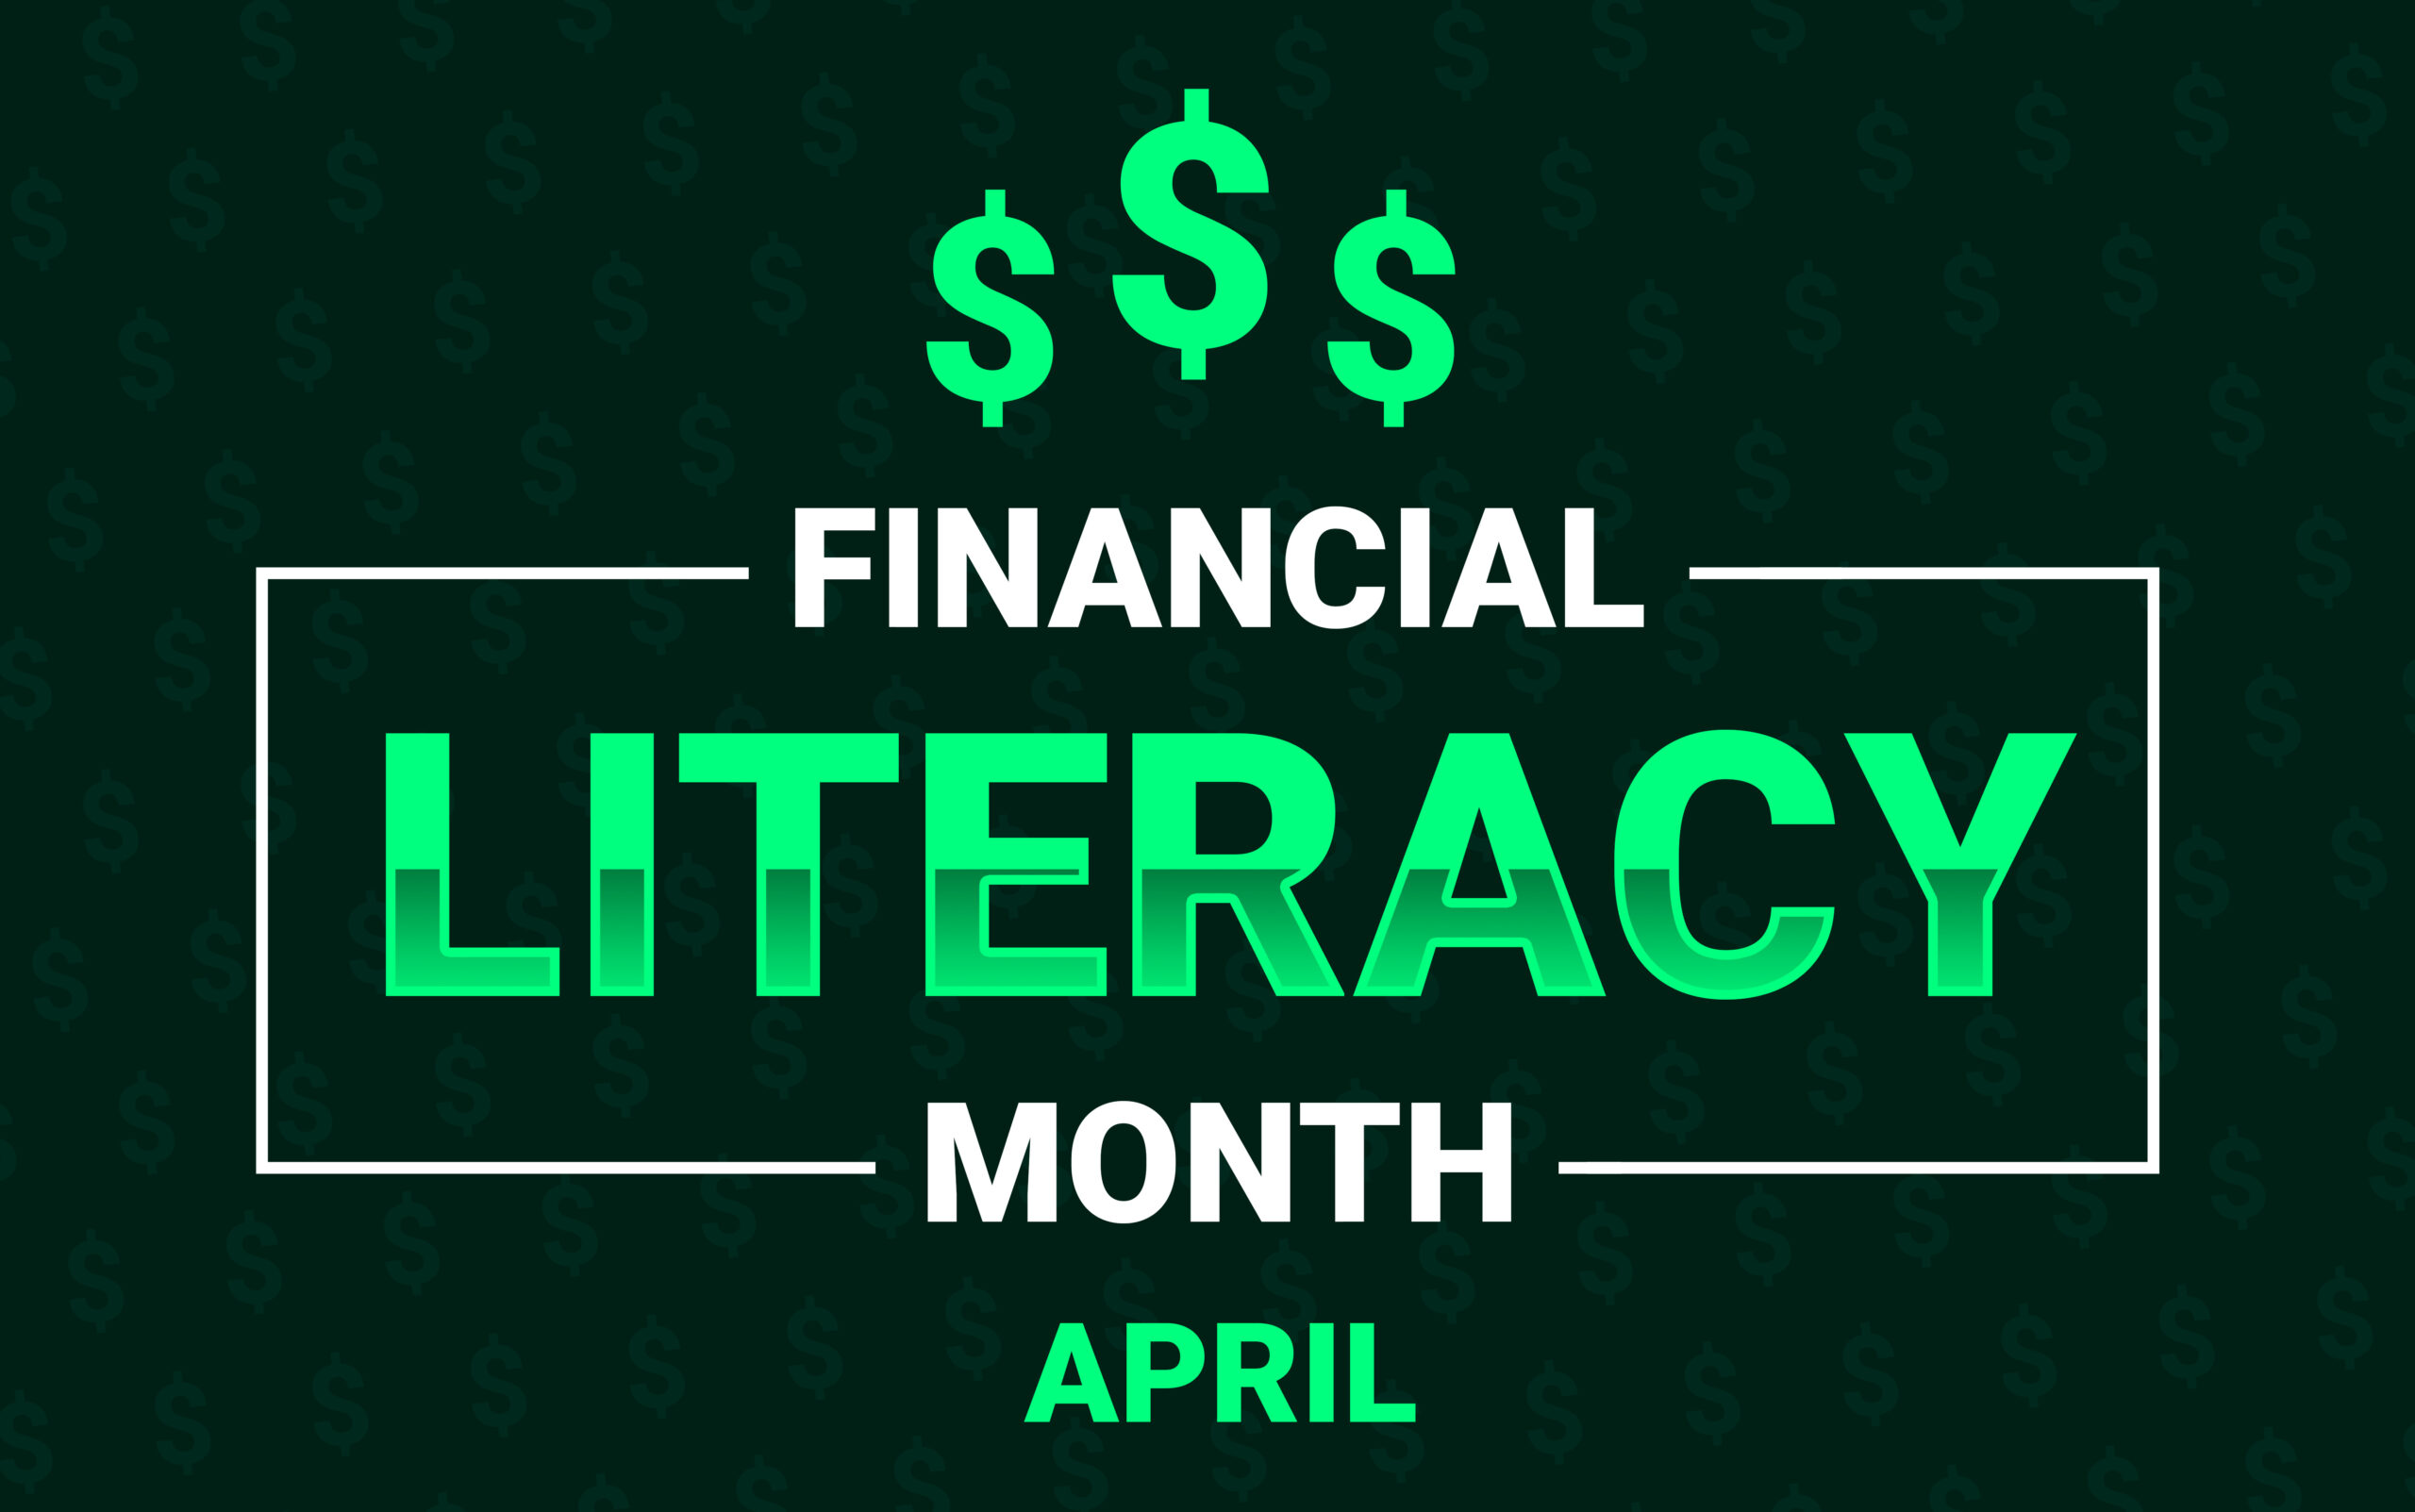 4월은 금융교육의 달입니다! 이는 돈에 대해 더 많이 배울 수 있는 특별한 시간이라는 뜻입니다. 금융 지식은 돈을 현명하게 사용하는 방법을 이해하는 것입니다.